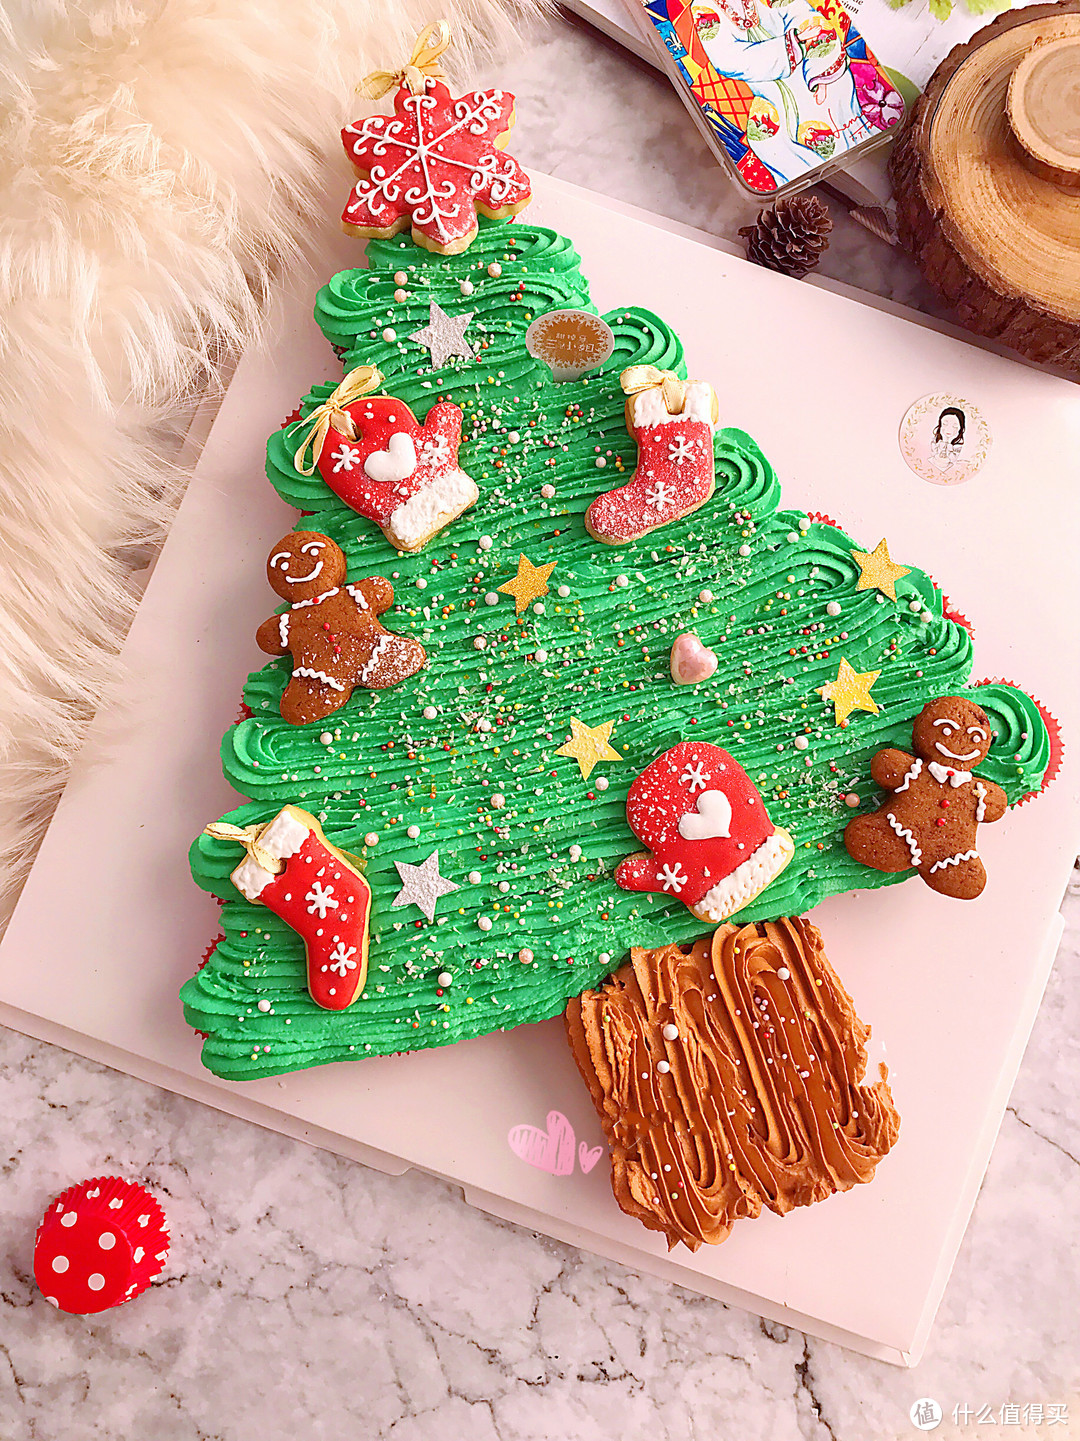 我要吃掉这棵圣诞树！超级简单的圣诞树蛋糕制作攻略